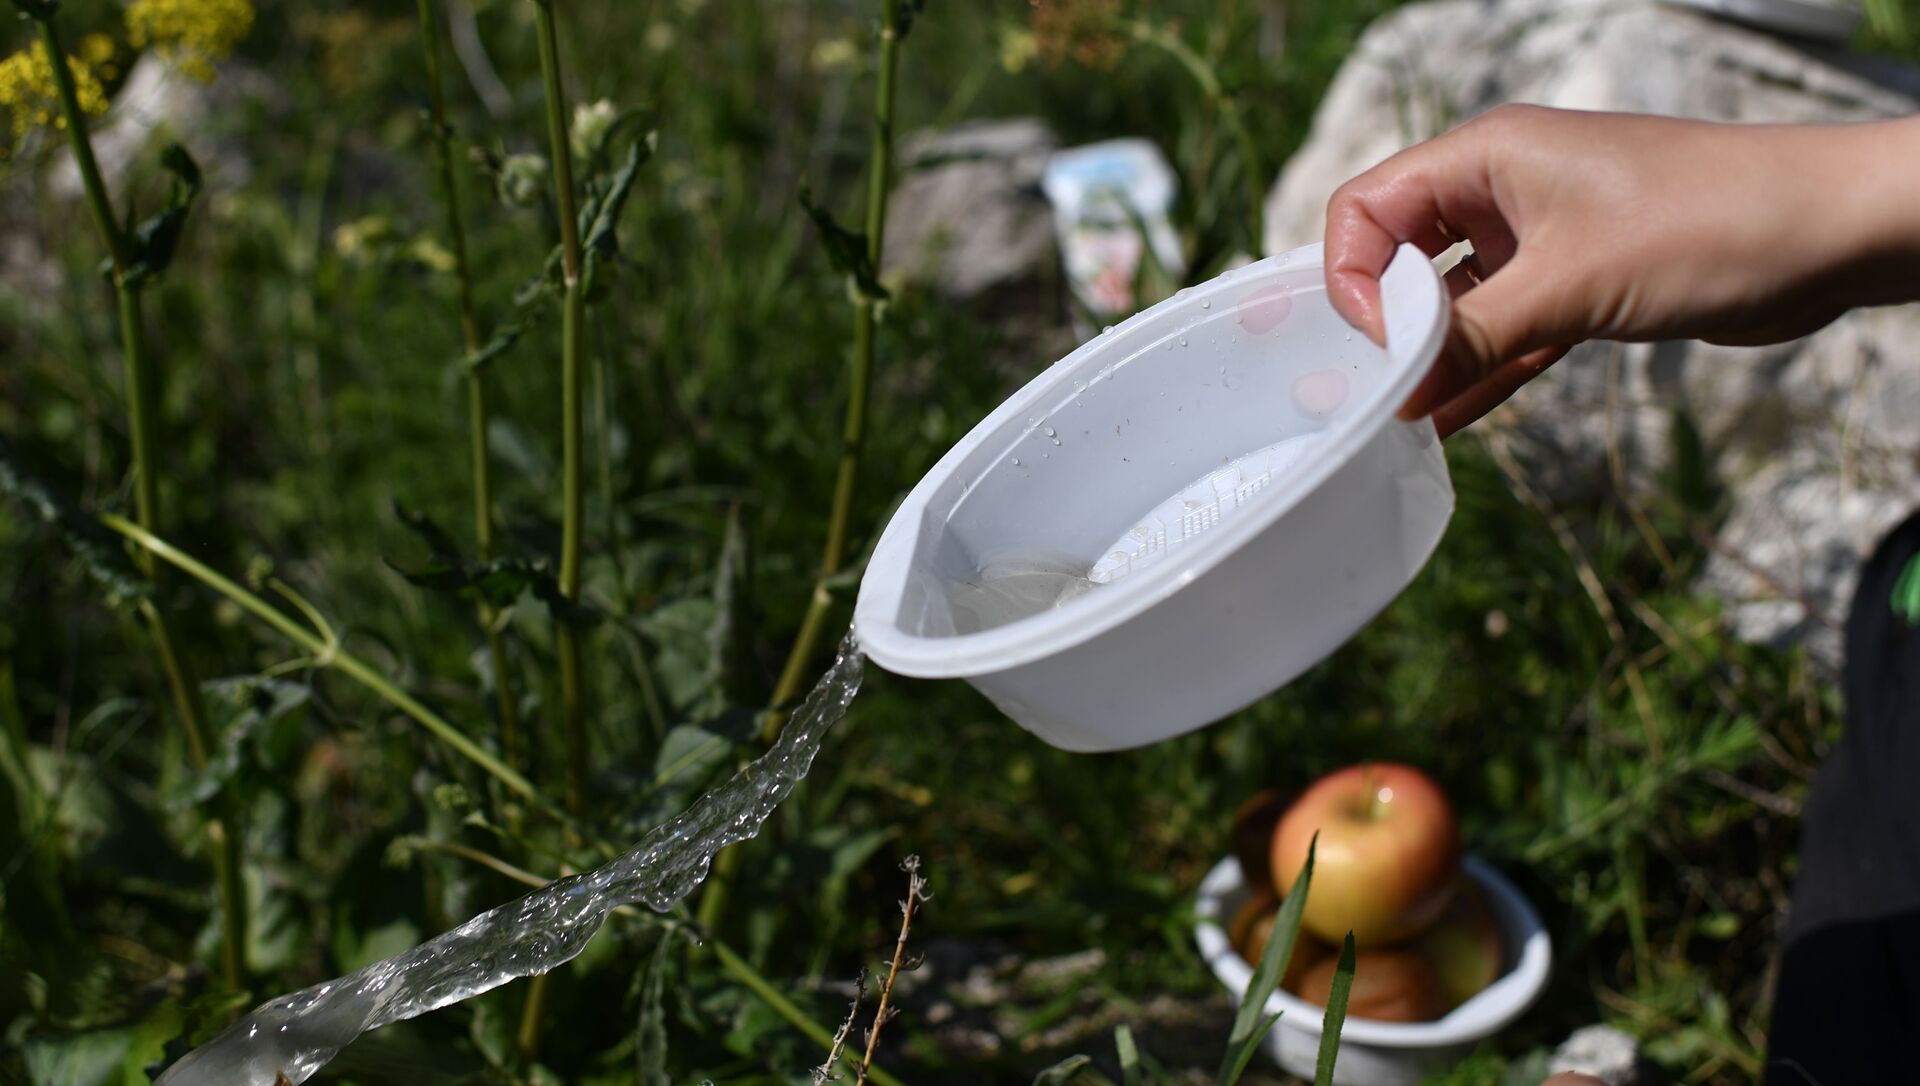 Пластиковая посуда используется во время пикника. - Sputnik Азербайджан, 1920, 22.06.2021